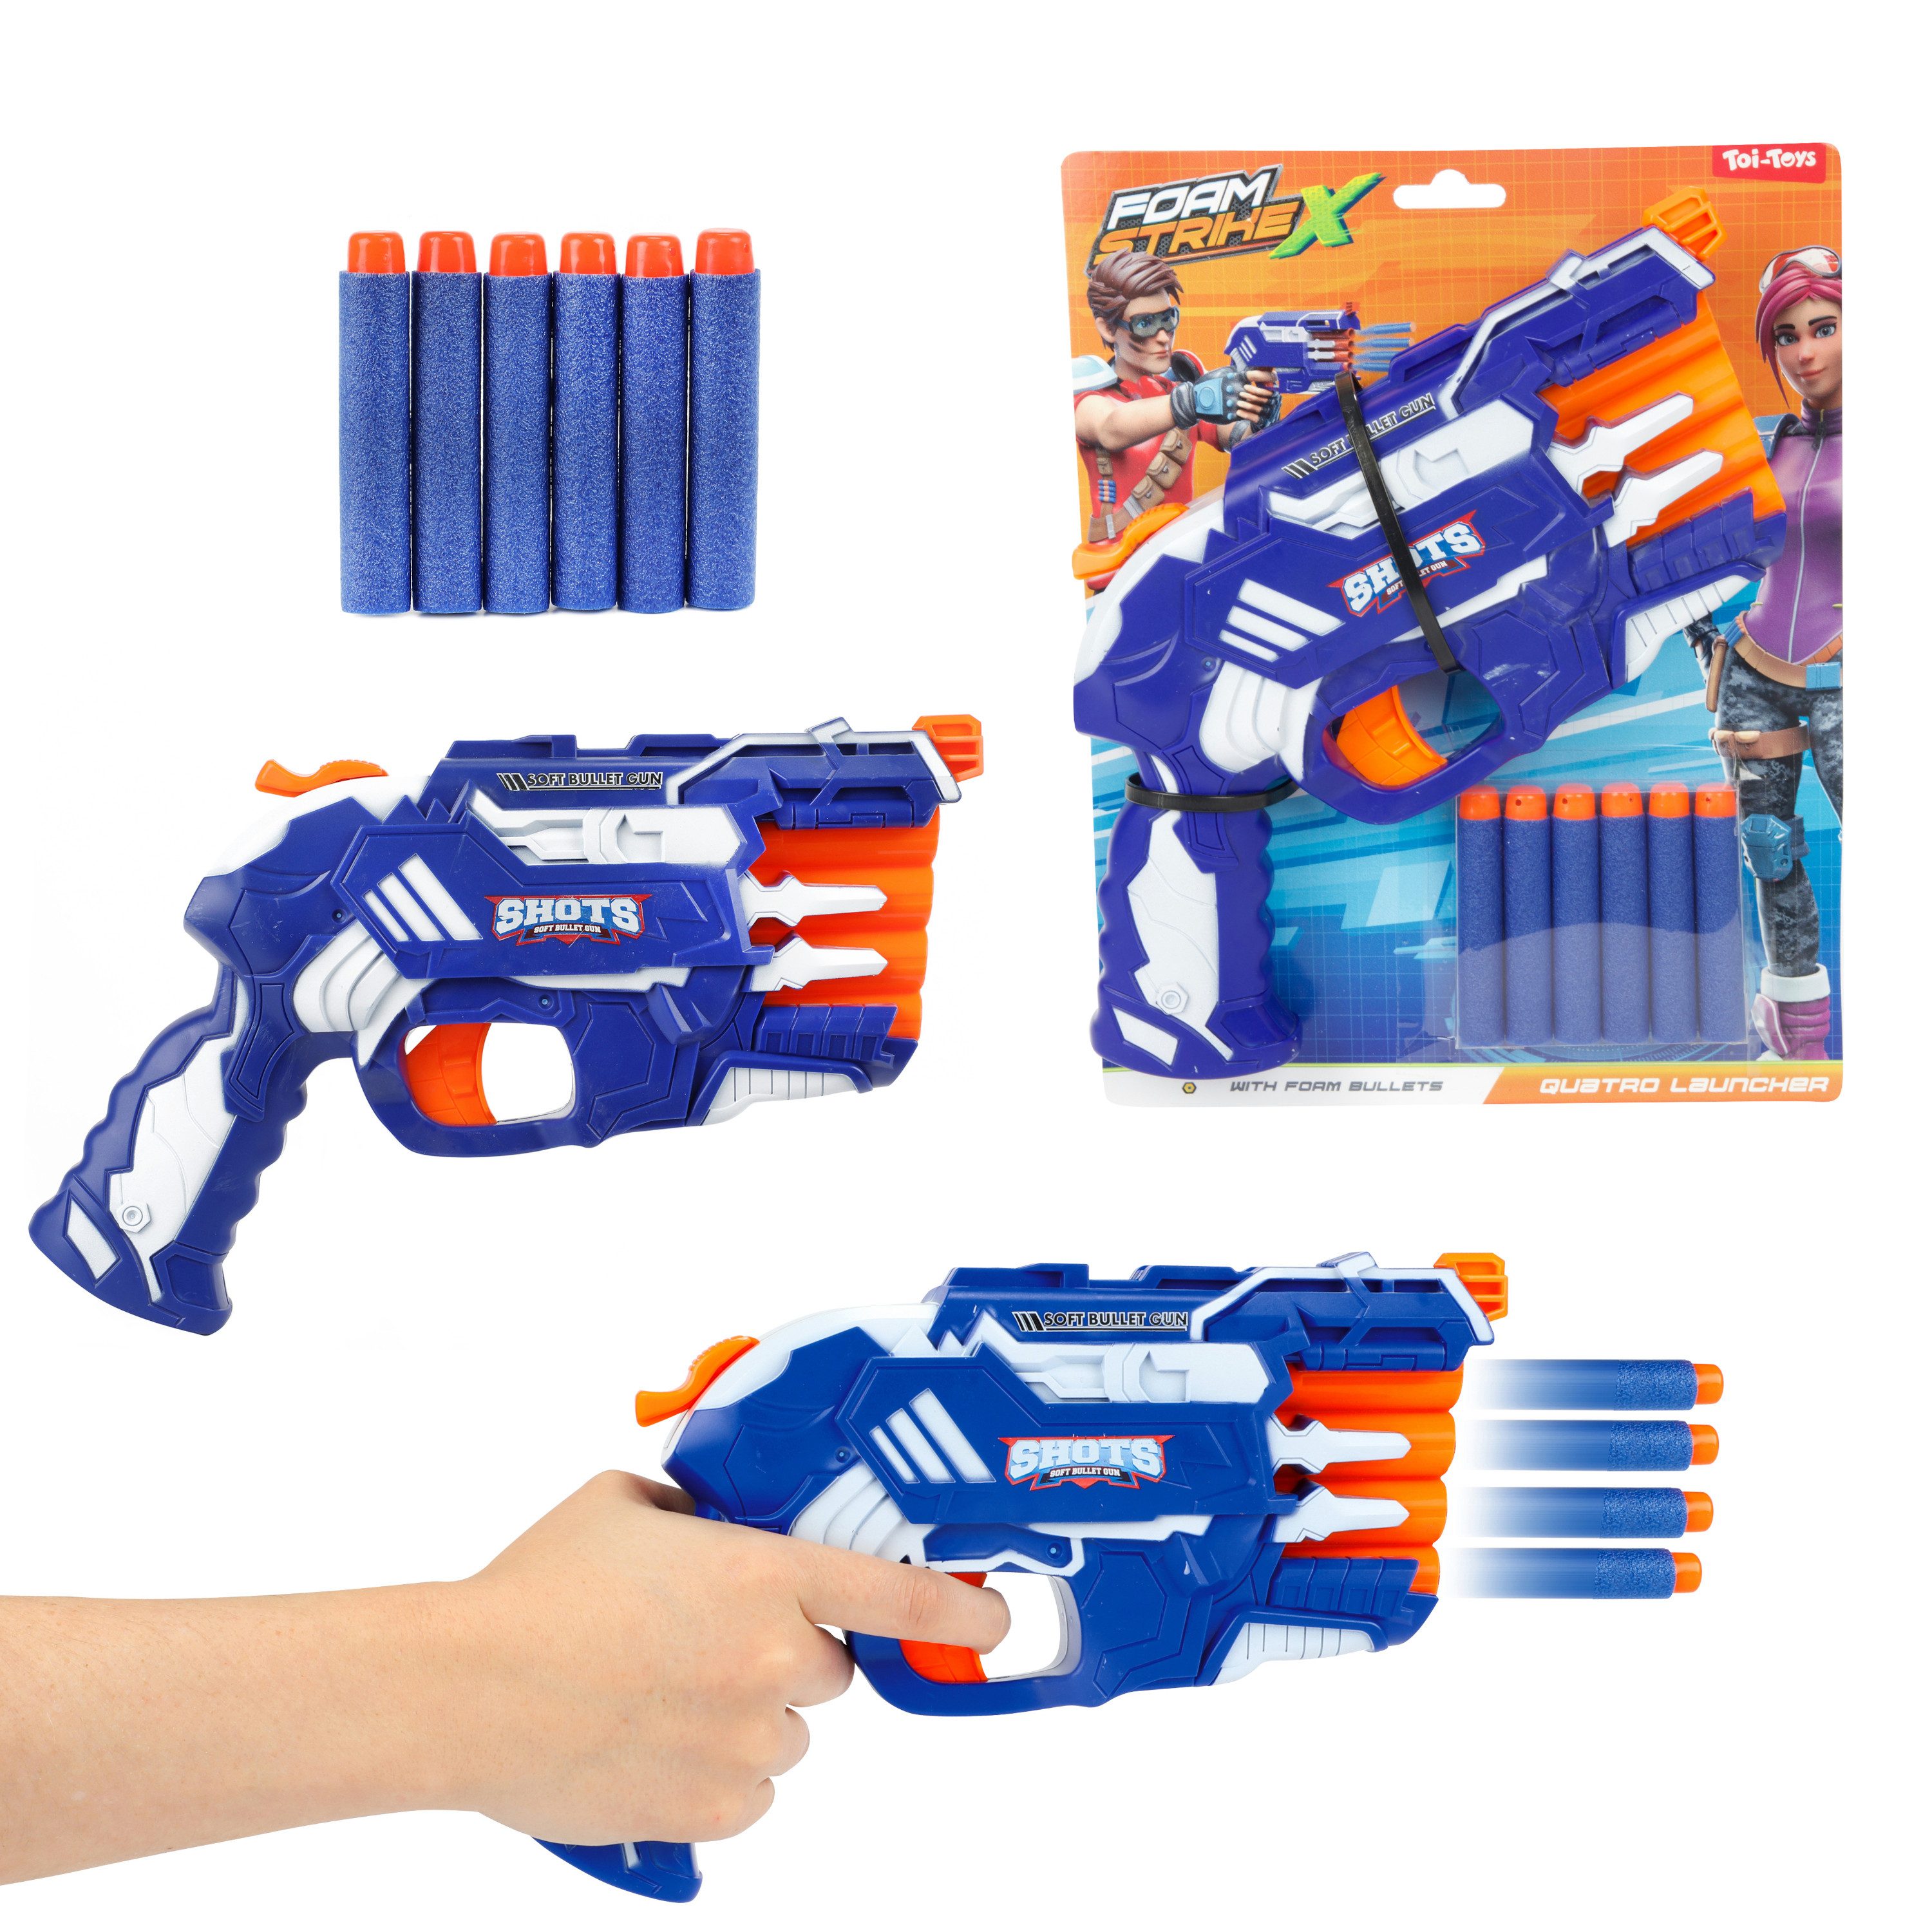 Toi-Toys Blaster FOAM STRIKEX - Pistole 4 Schuss mit 5 Schaumstoffpfeilen